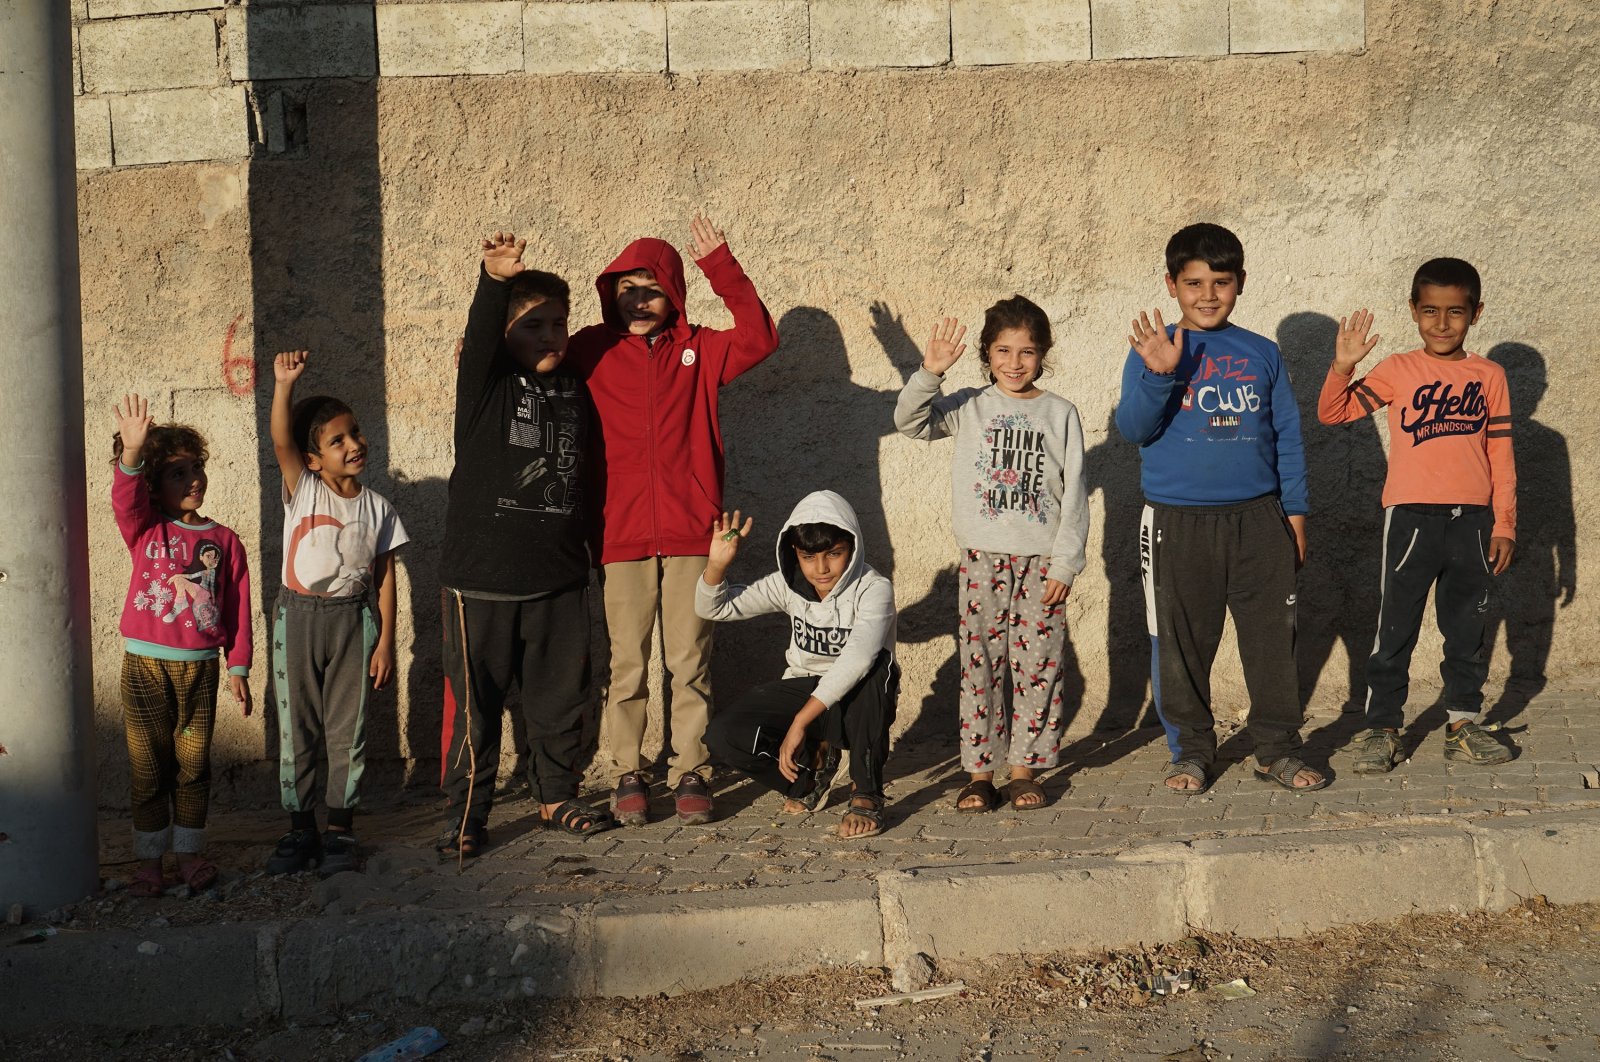 Sebagian besar warga Suriah di Turki senang, lebih bersedia untuk tinggal: Belajar